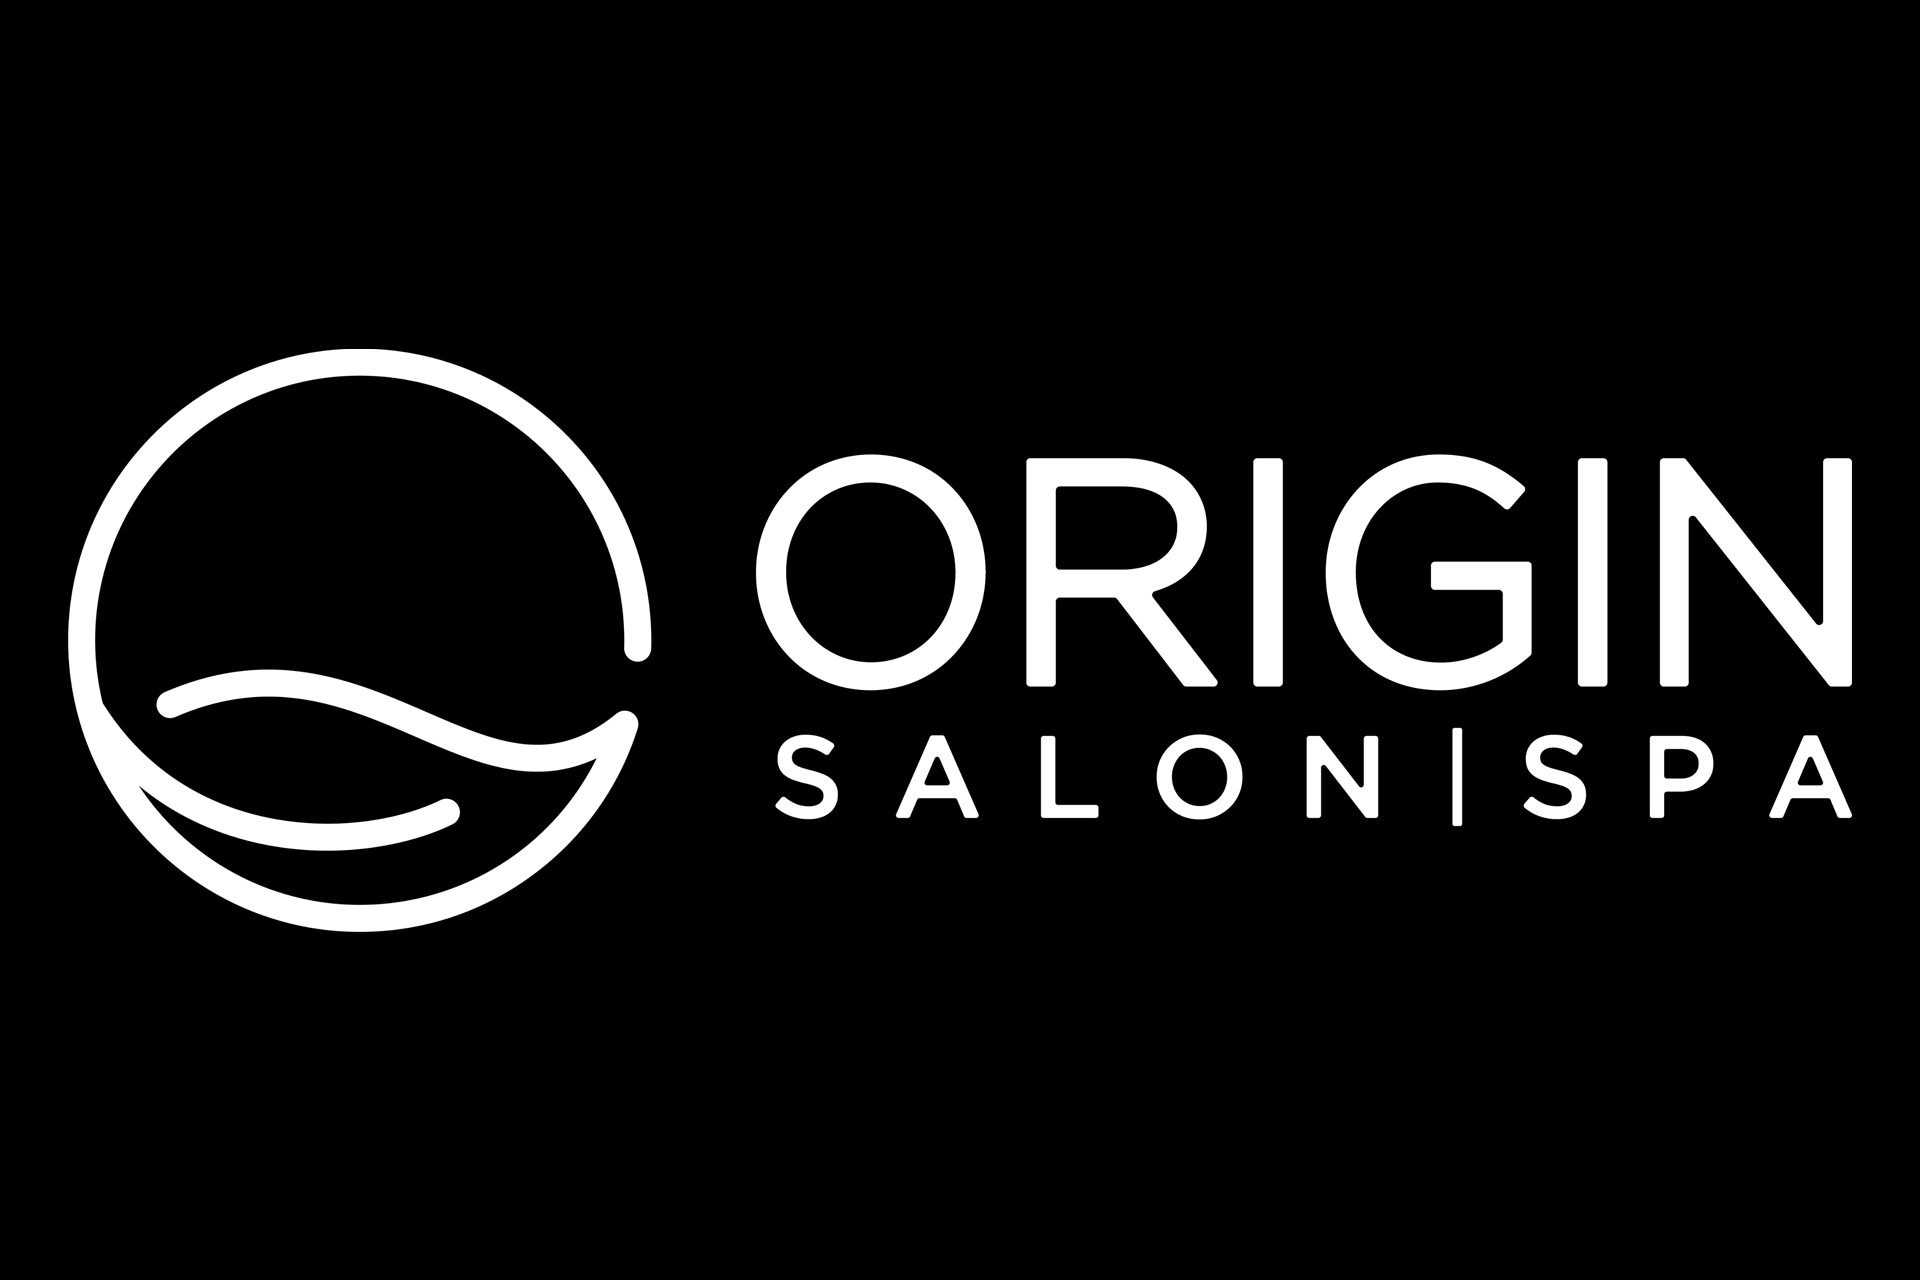 Đặt trực tuyến với Origin Salon Spa sẽ giúp bạn tiết kiệm thời gian và mua được các gói dịch vụ hấp dẫn với giá ưu đãi. Bạn sẽ có thể dễ dàng đặt lịch hẹn và mua các sản phẩm chất lượng cao với chỉ vài clicks chuột. 